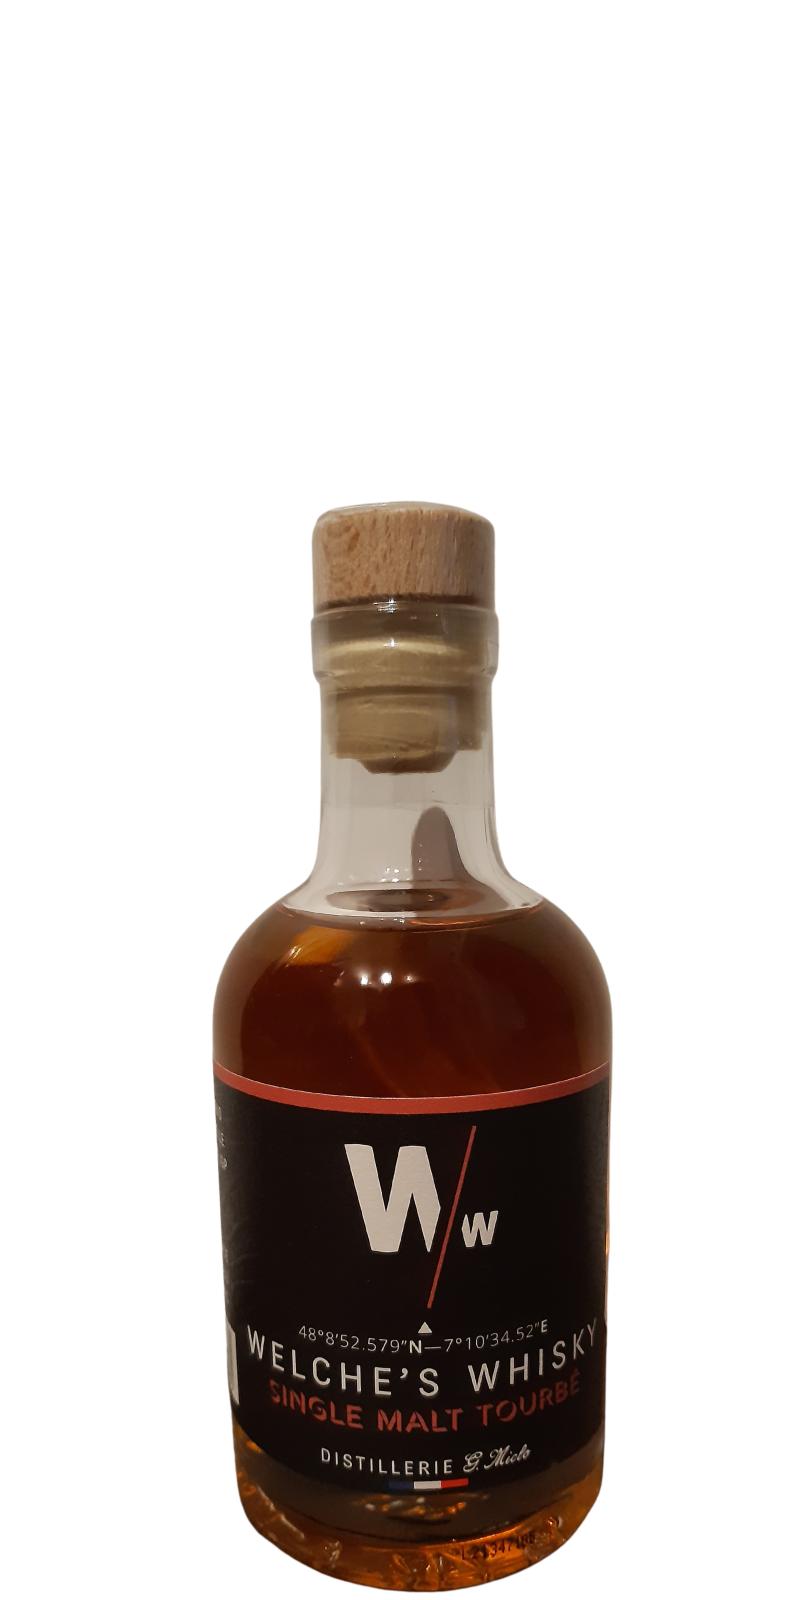 Welche's Whisky Single Malt Tourbe Sauternes Casks Sauternes 46% 200ml